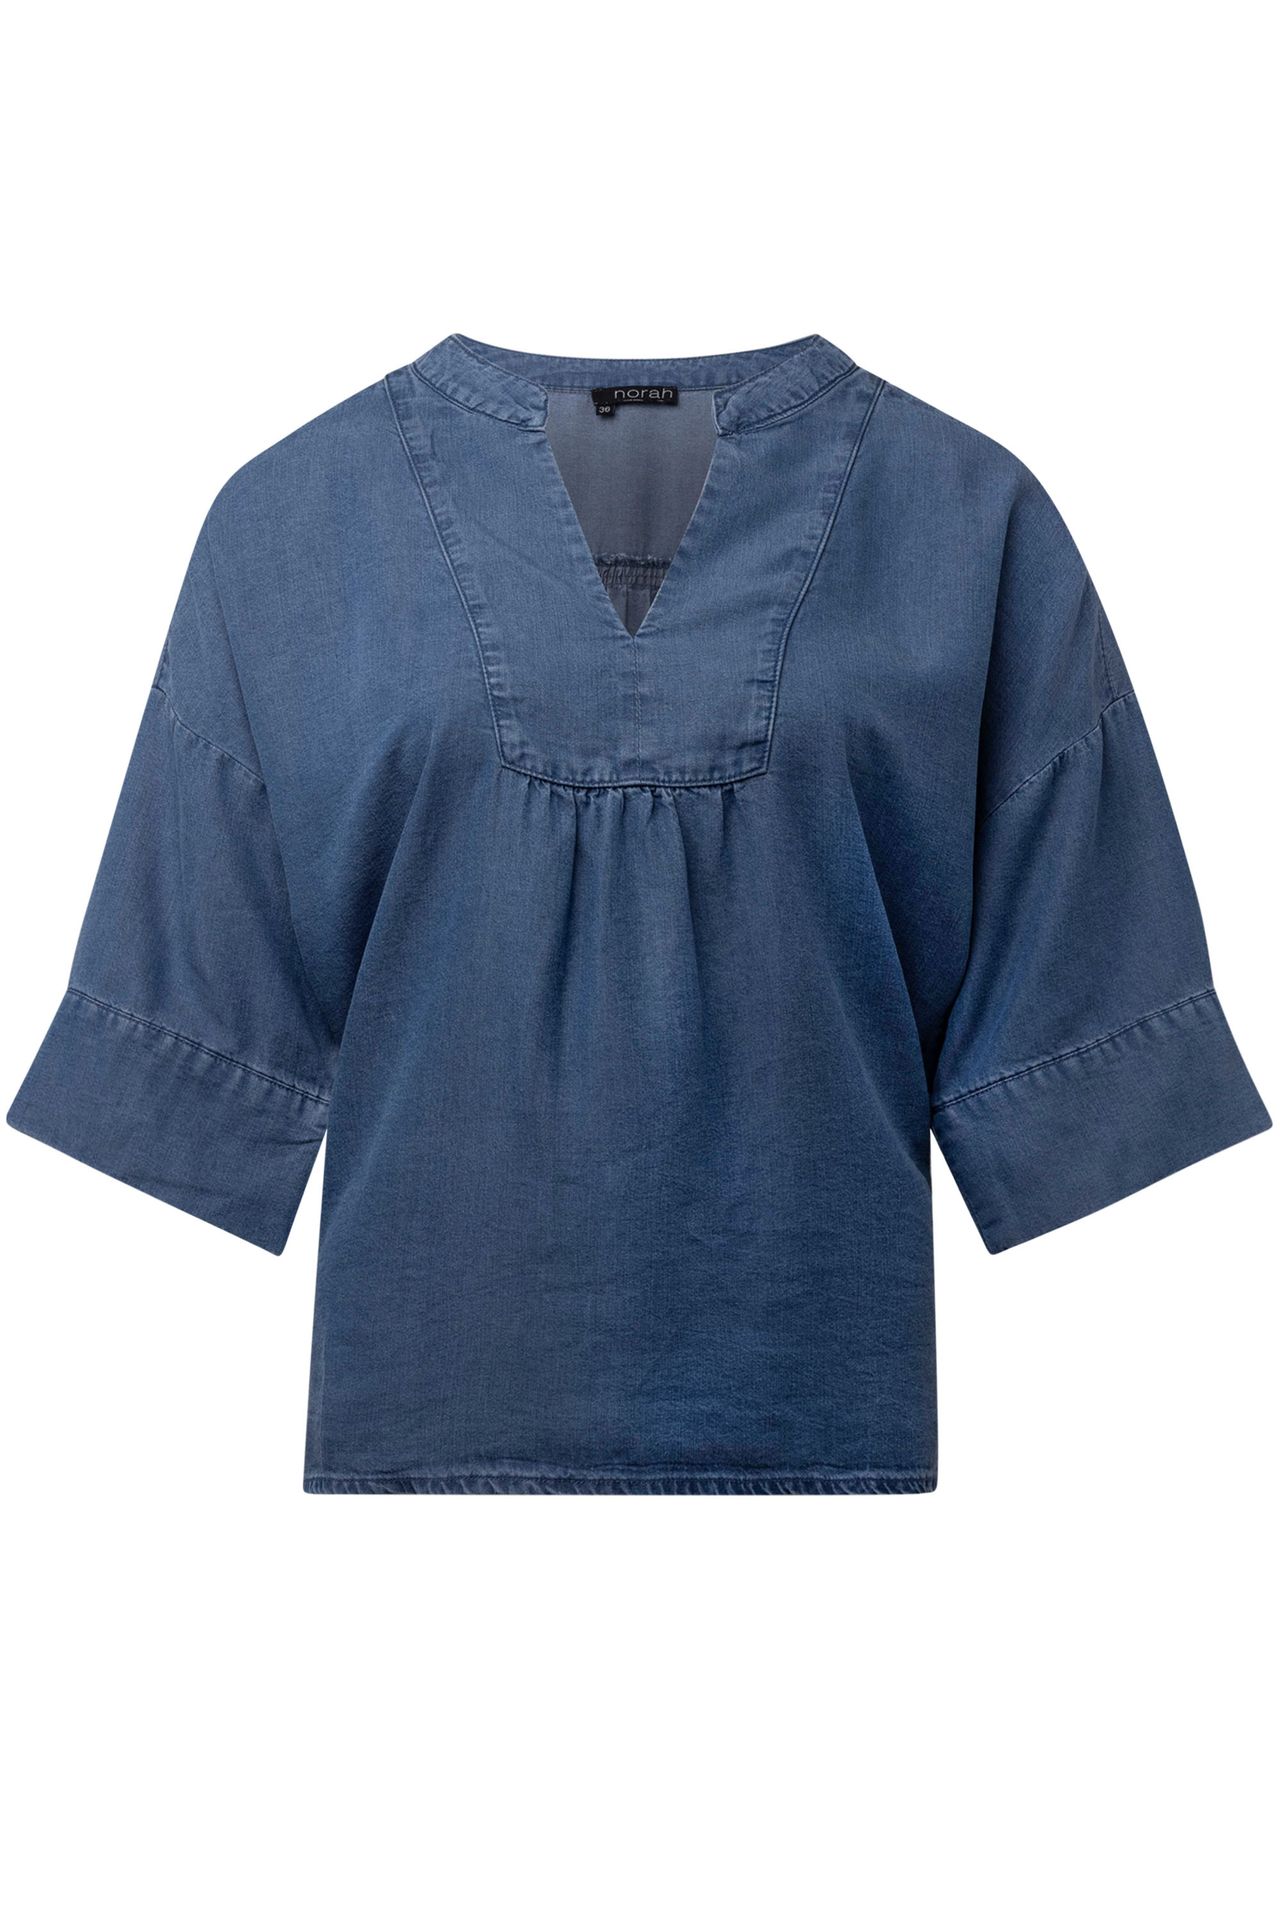 Norah Denim blouse jeans/blue 214592-471